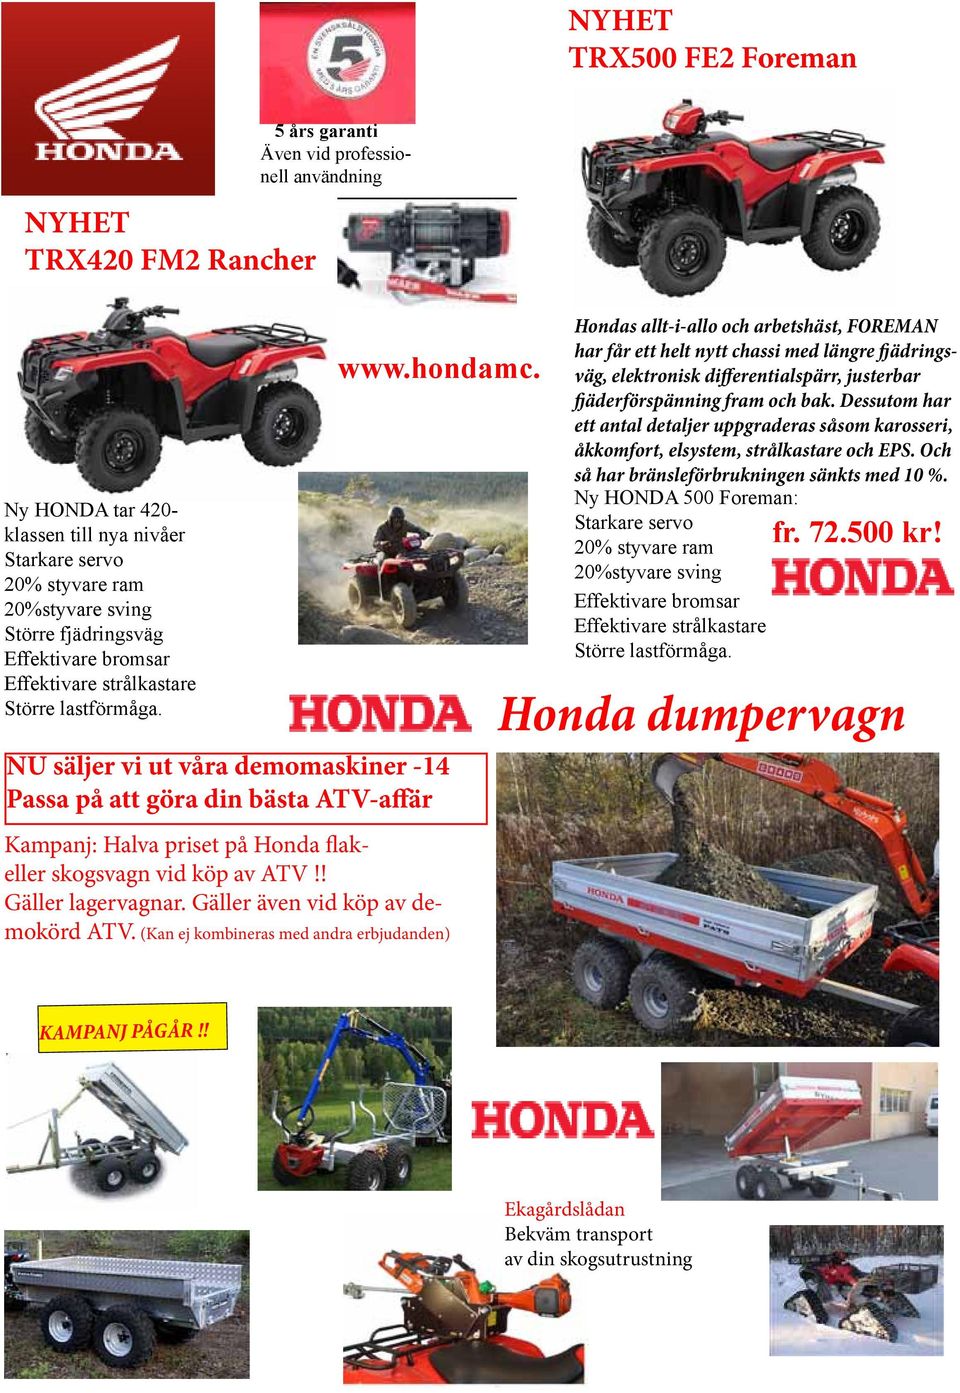 NU säljer vi ut våra demomaskiner -14 Passa på att göra din bästa ATV-affär Kampanj: Halva priset på Honda flakeller skogsvagn vid köp av ATV!! Gäller lagervagnar. Gäller även vid köp av demokörd ATV.